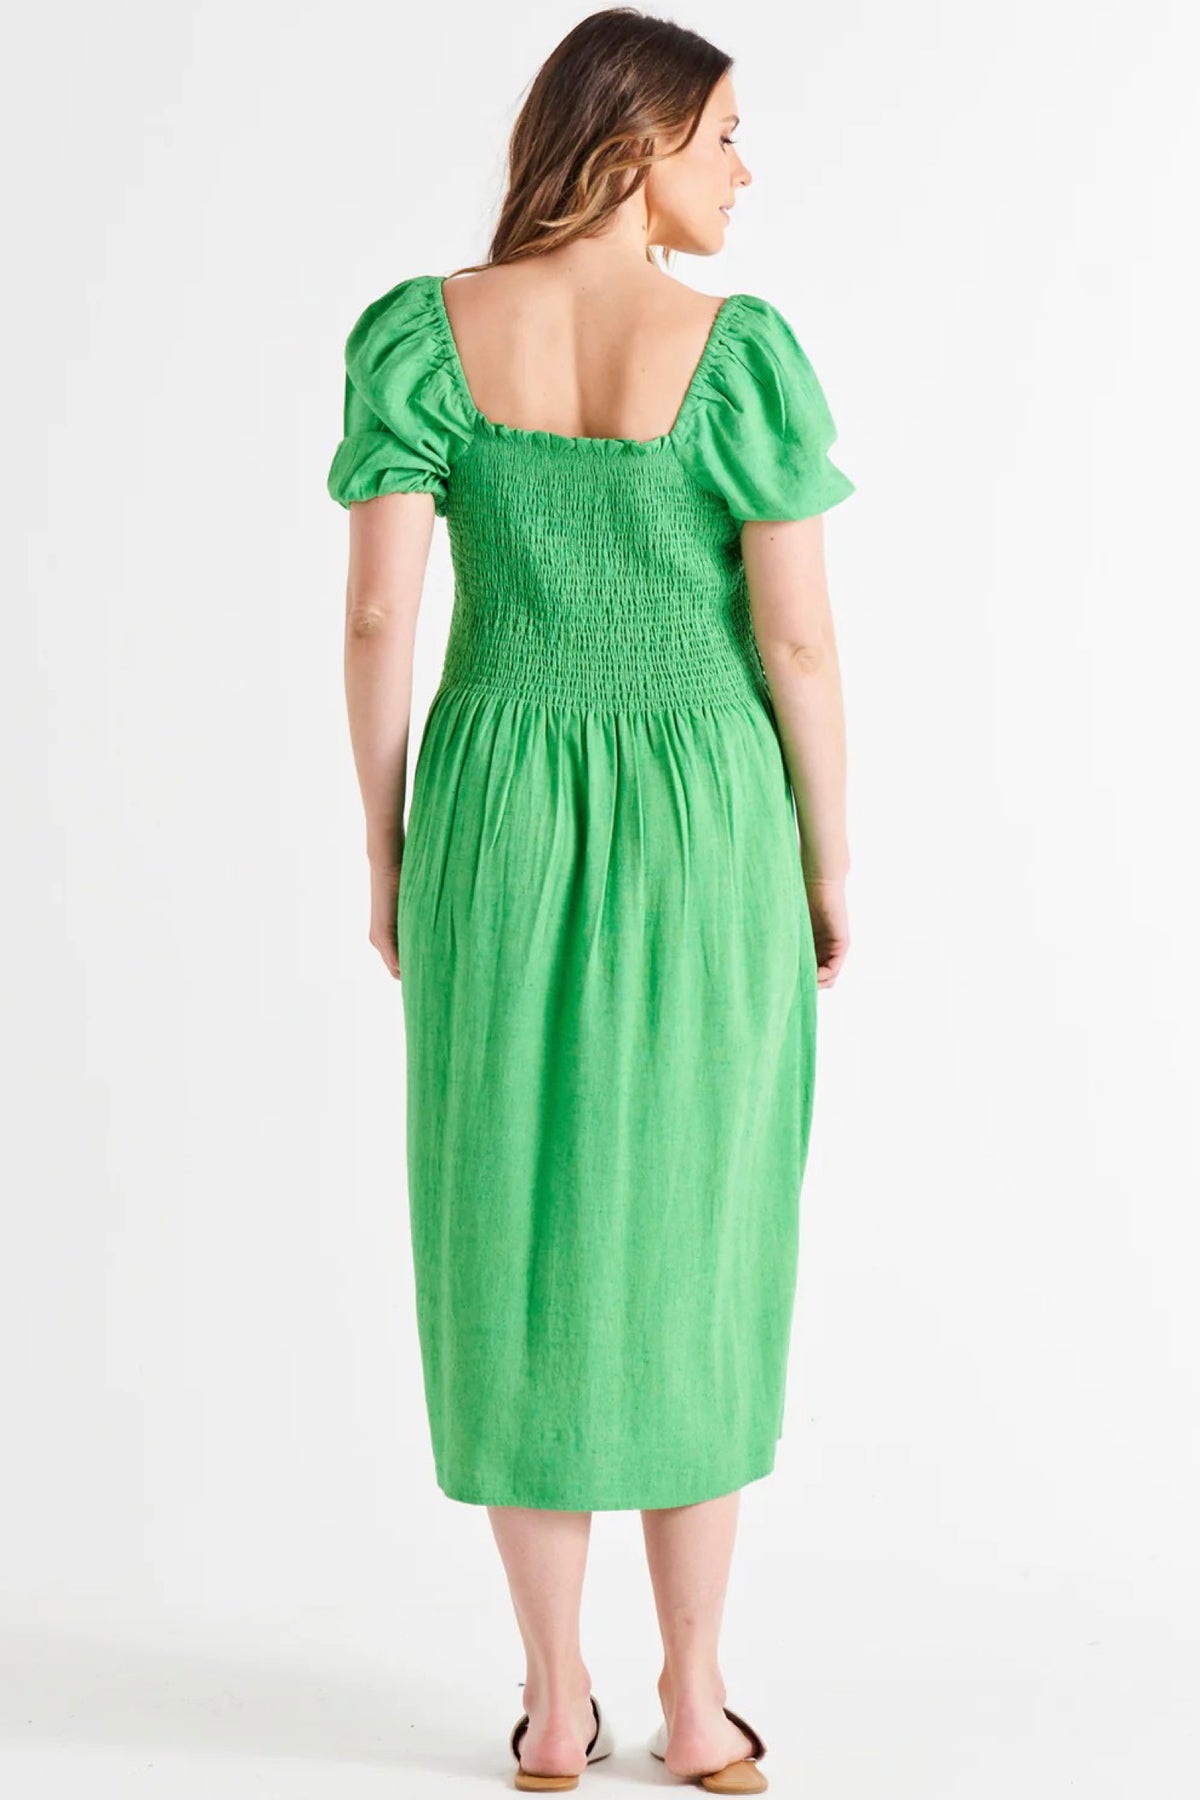 Ingrid Shoulder Dress Bright Green